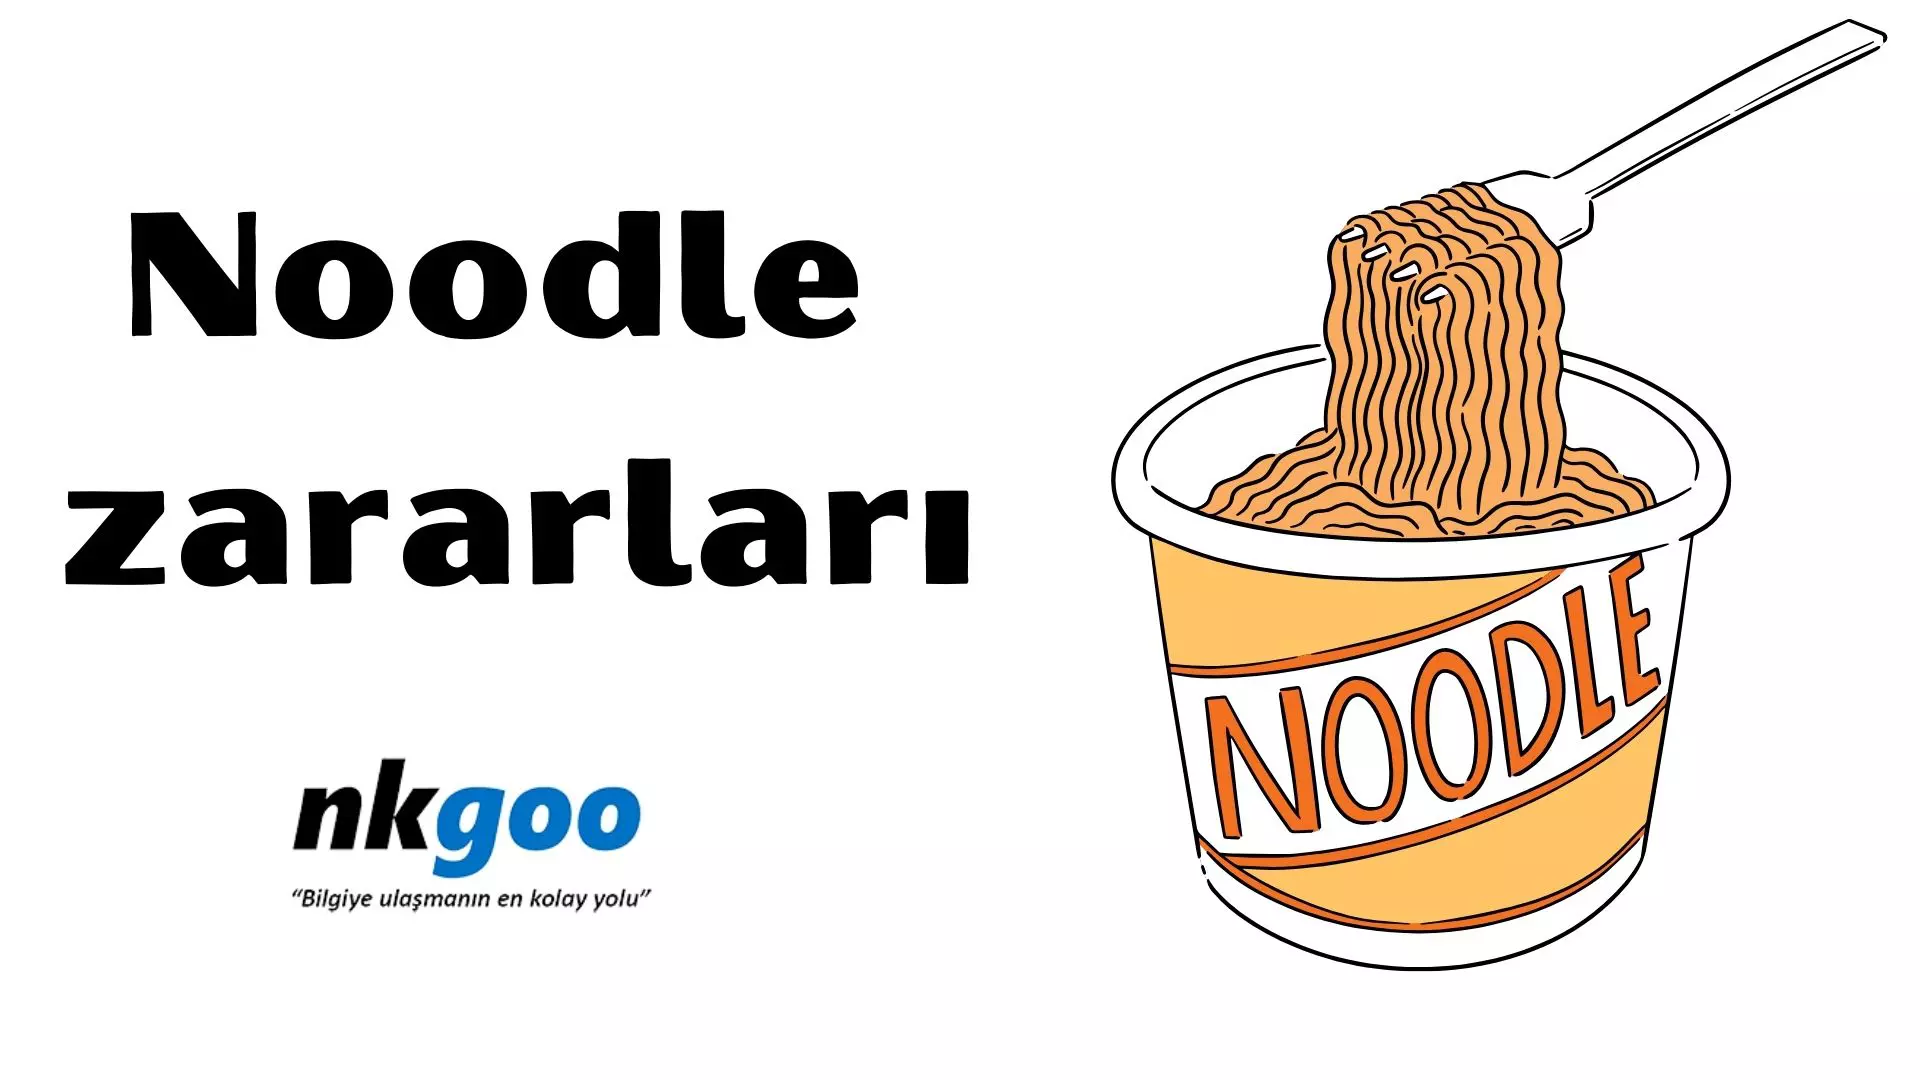 Noodle zararları nelerdir? 6 zararı